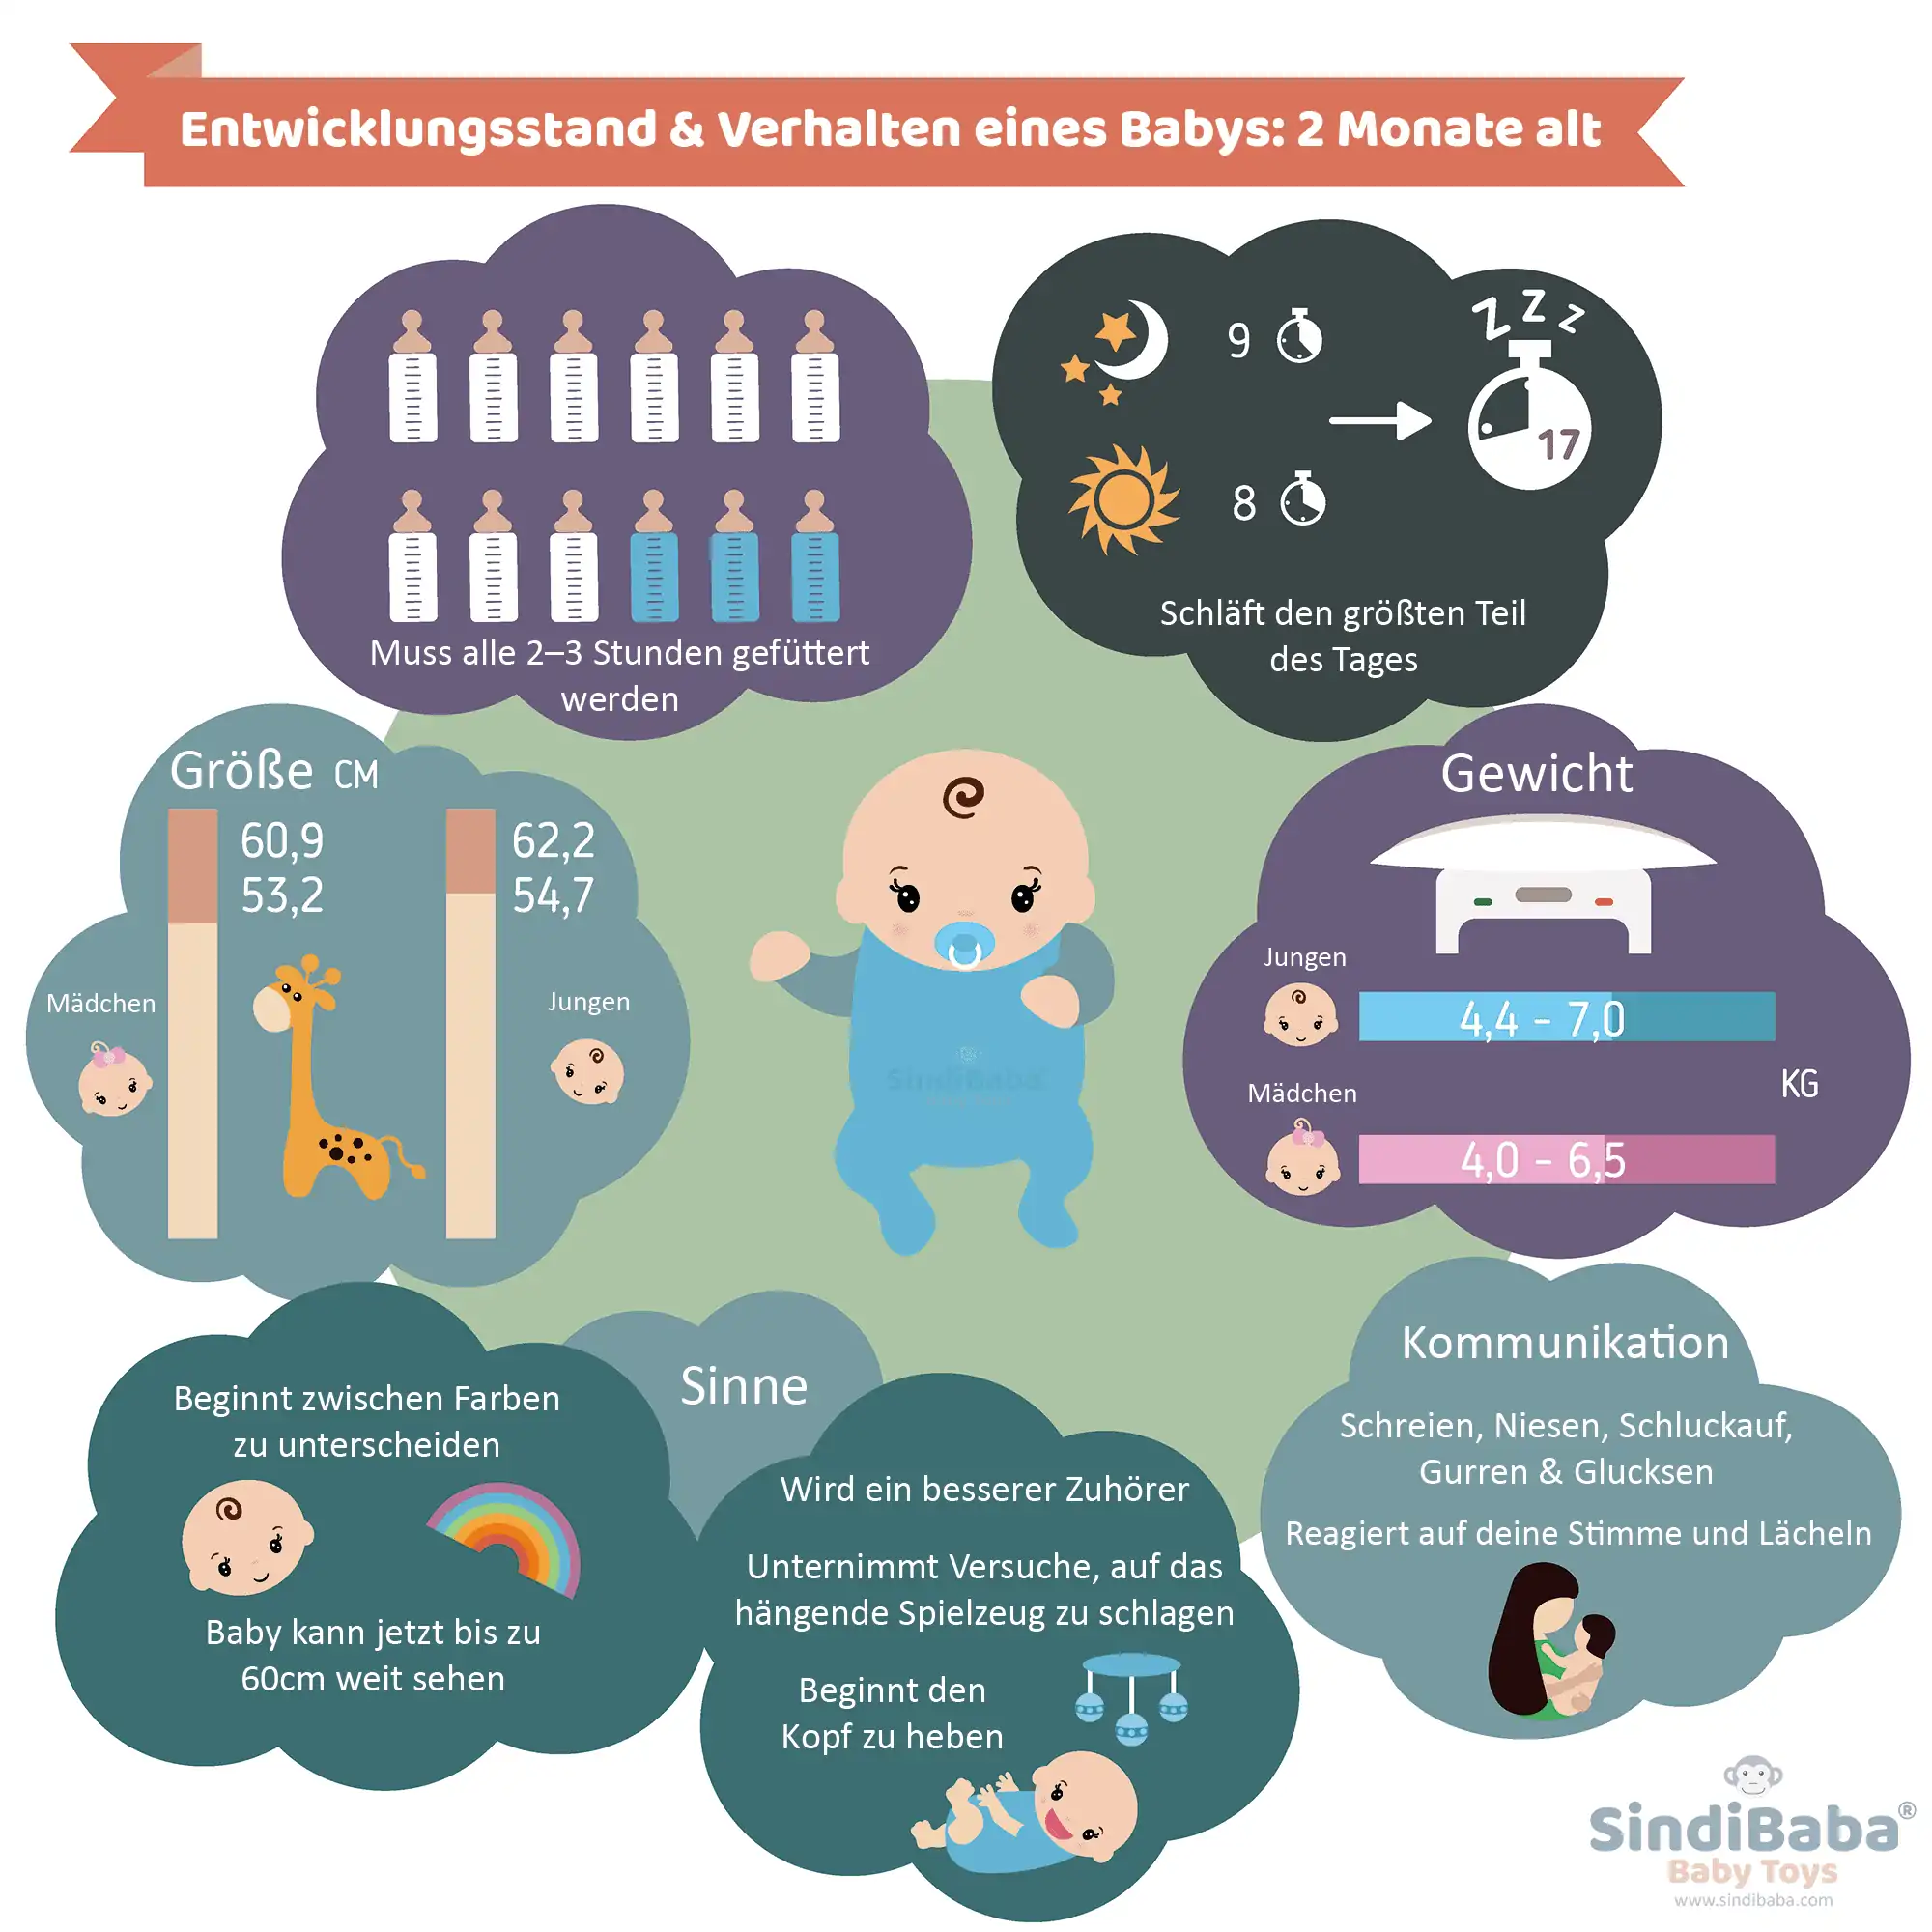 Infografik: Entwicklungsstand & Verhalten eines Babys, 2 Monate alt